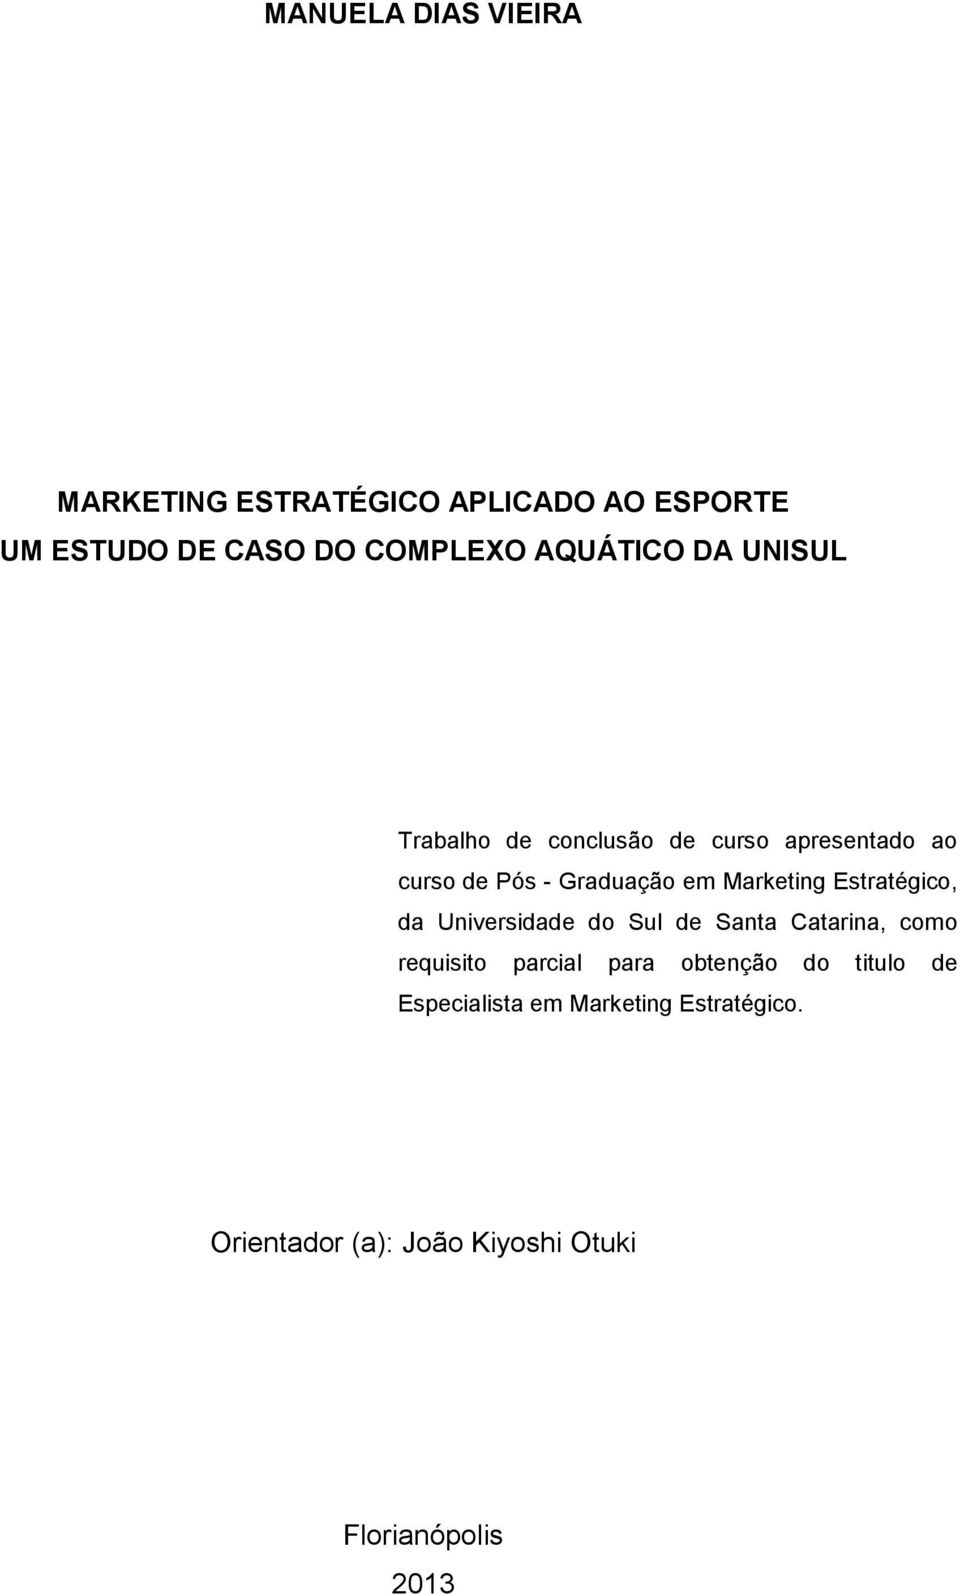 Marketing Estratégico, da Universidade do Sul de Santa Catarina, como requisito parcial para